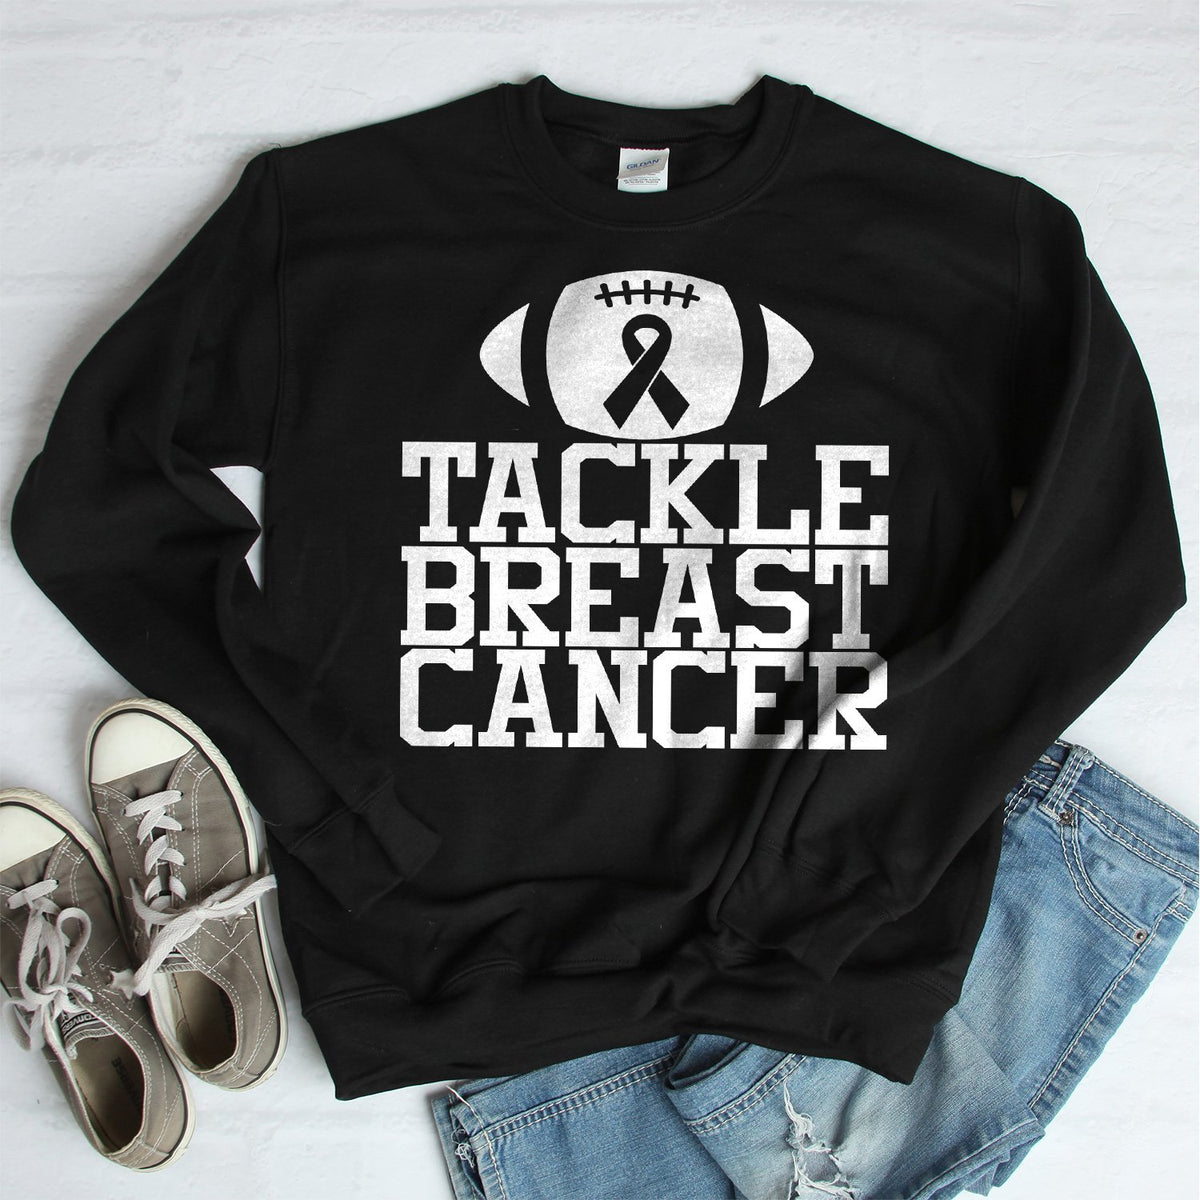 Tackle Breast Cancer - Long Sleeve Heavy Crewneck Sweatshirt